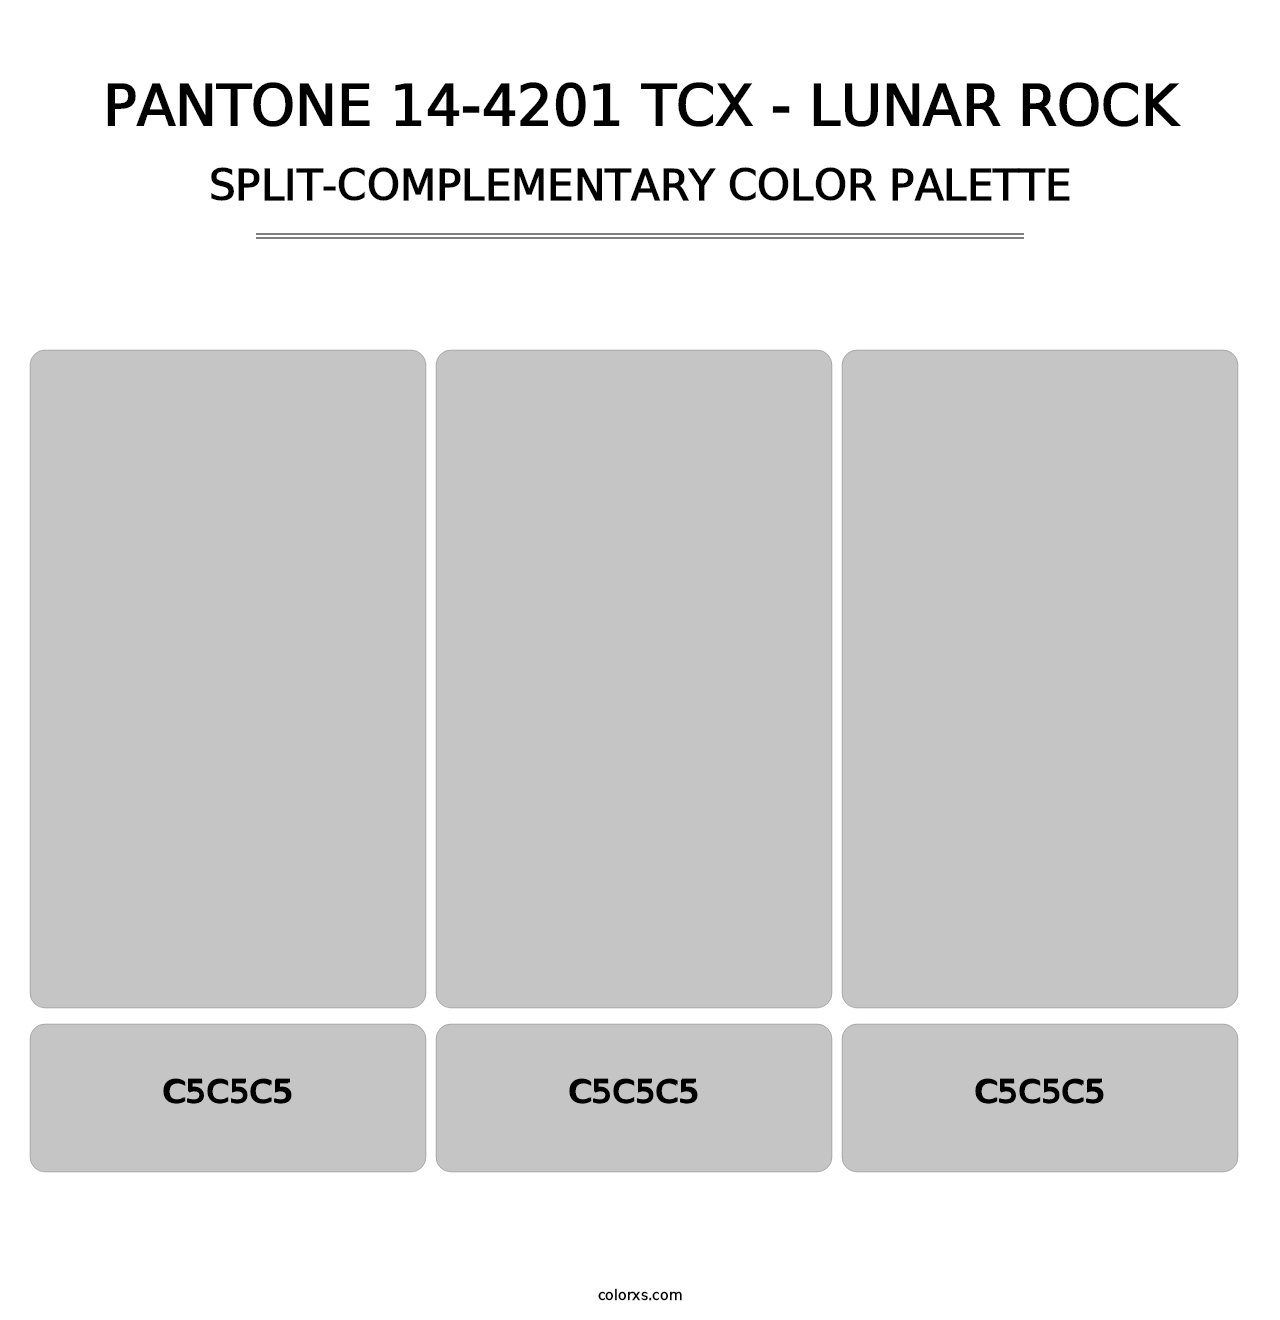 PANTONE 14-4201 TCX - Lunar Rock - Split-Complementary Color Palette